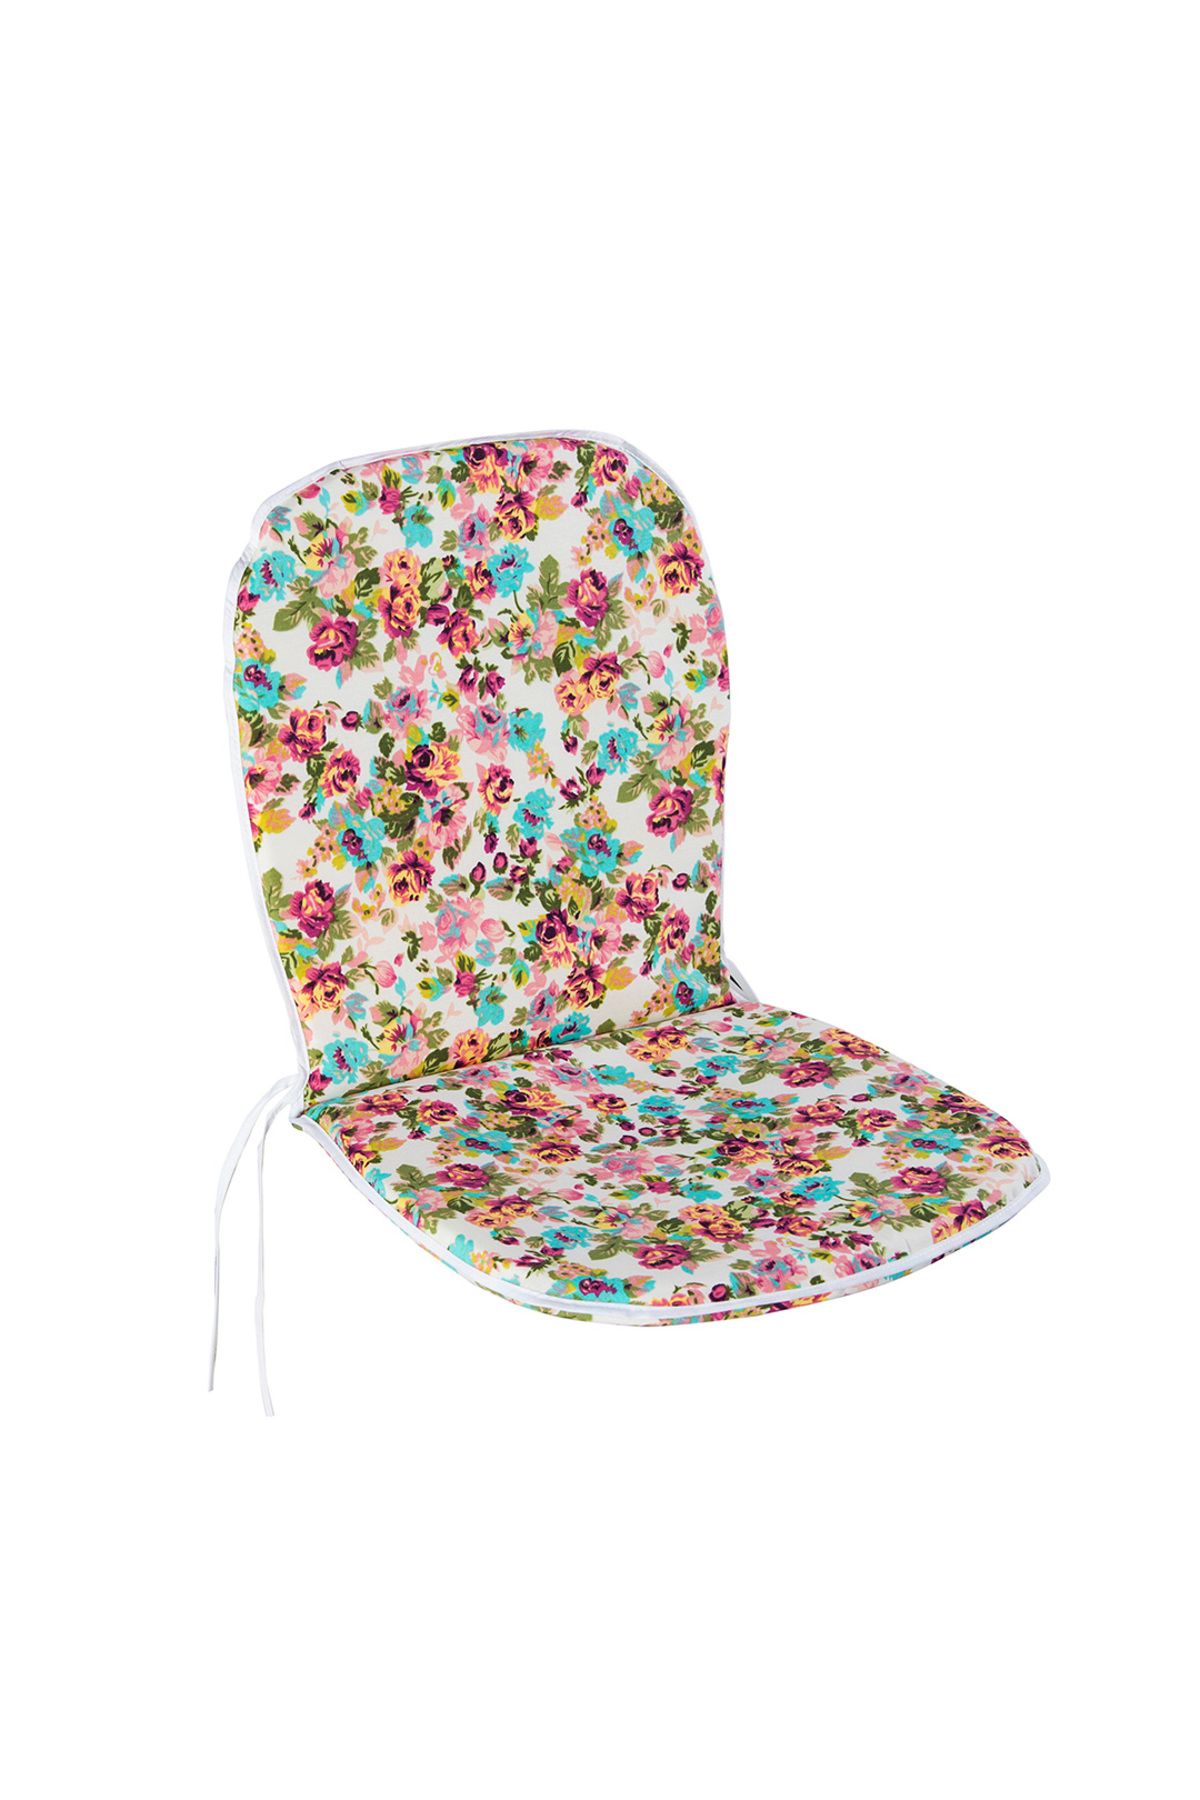 Homedius Lilia Pembe Çiçekli Sırtlıklı Sandalye Minderi